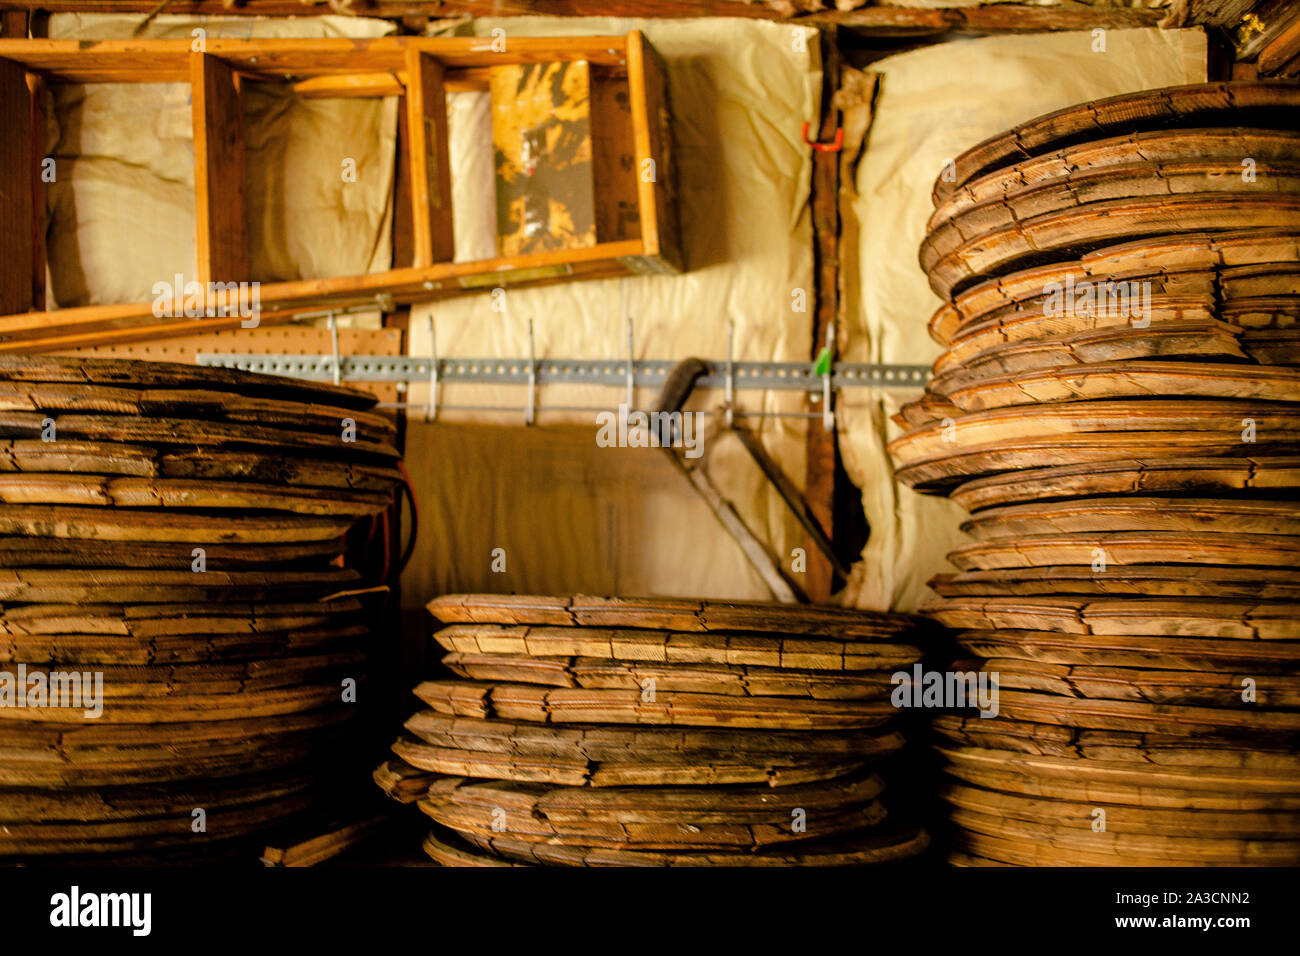 Des piles de bois bourbon barrel lids lean on wall bordée de tools Banque D'Images